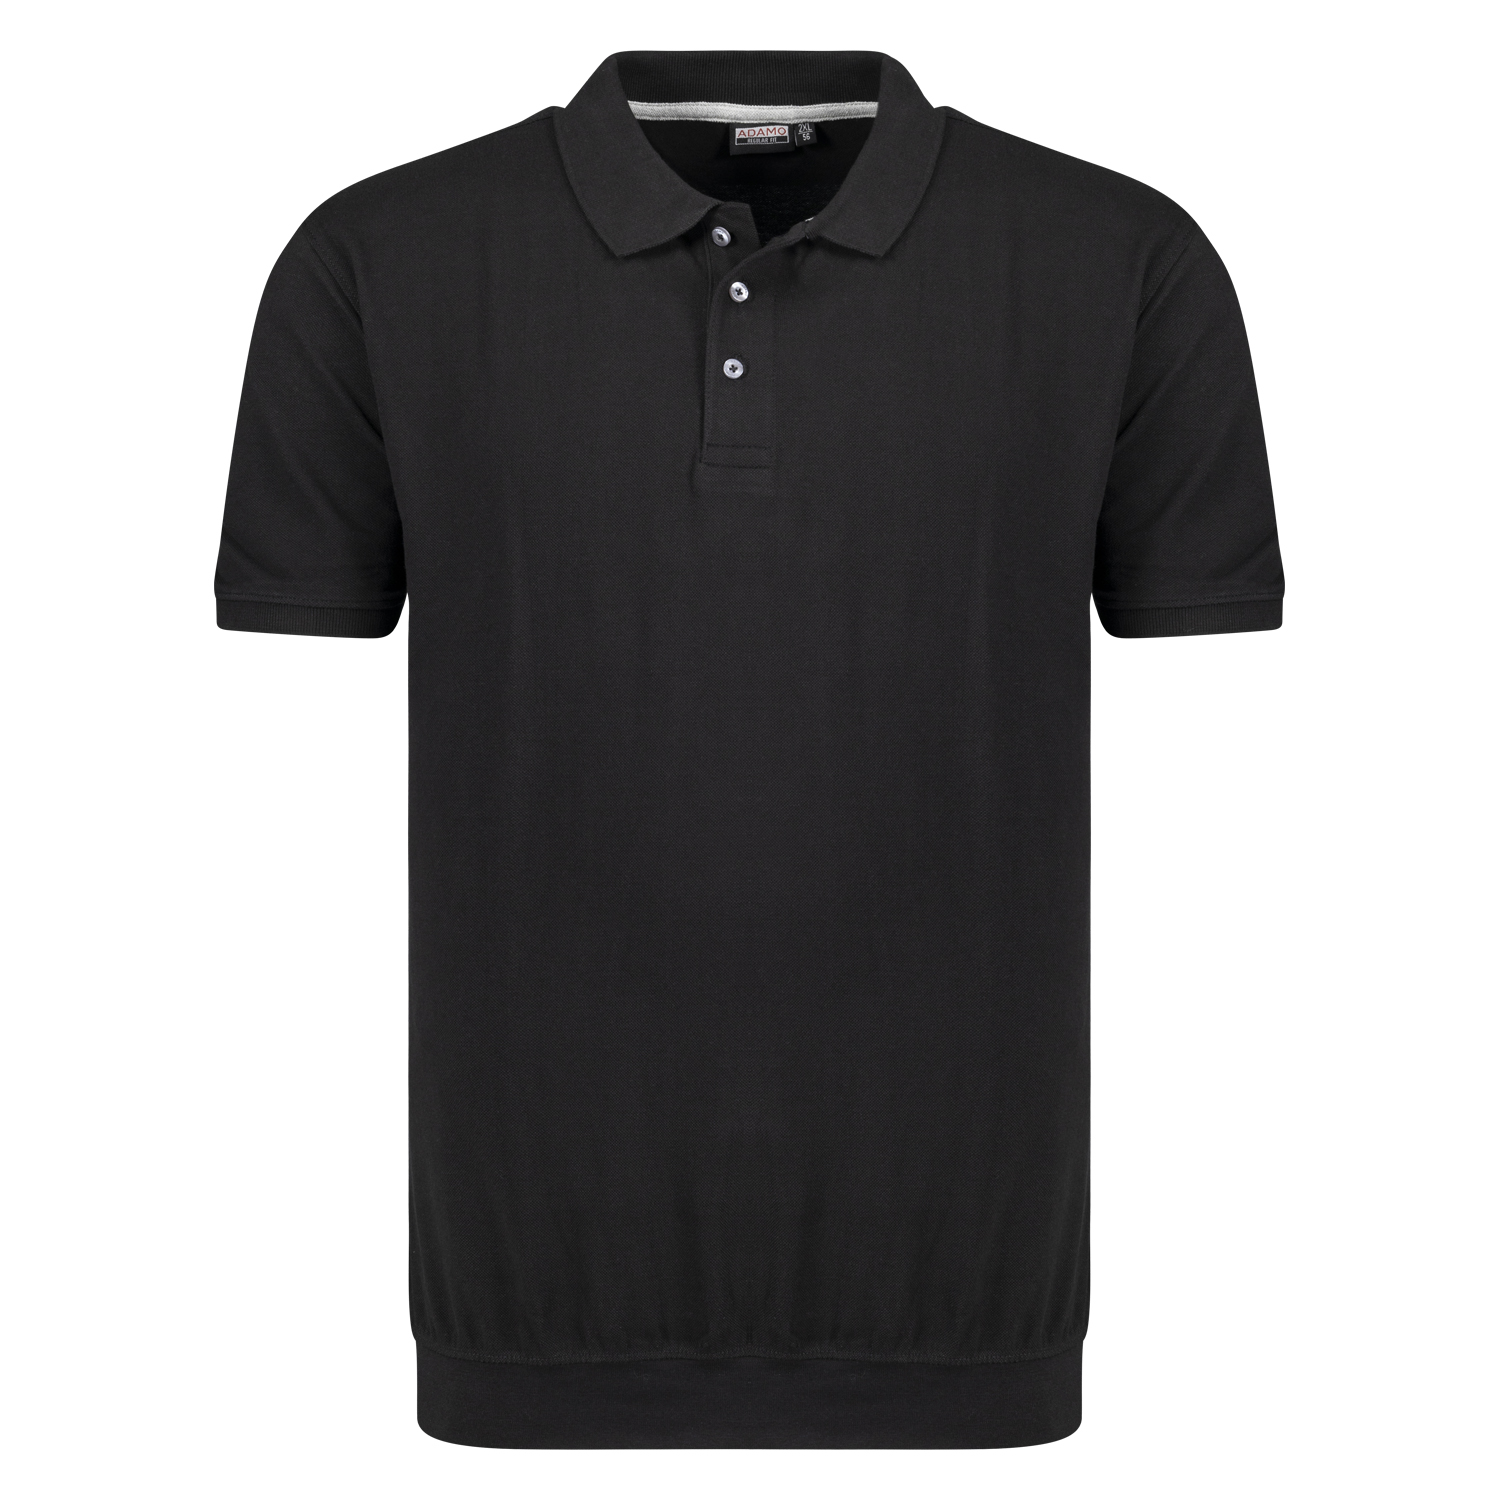 Kurzarm Pique-Poloshirt mit Bund Serie KADIR von ADAMO für Herren in großen Größen bis 10XL